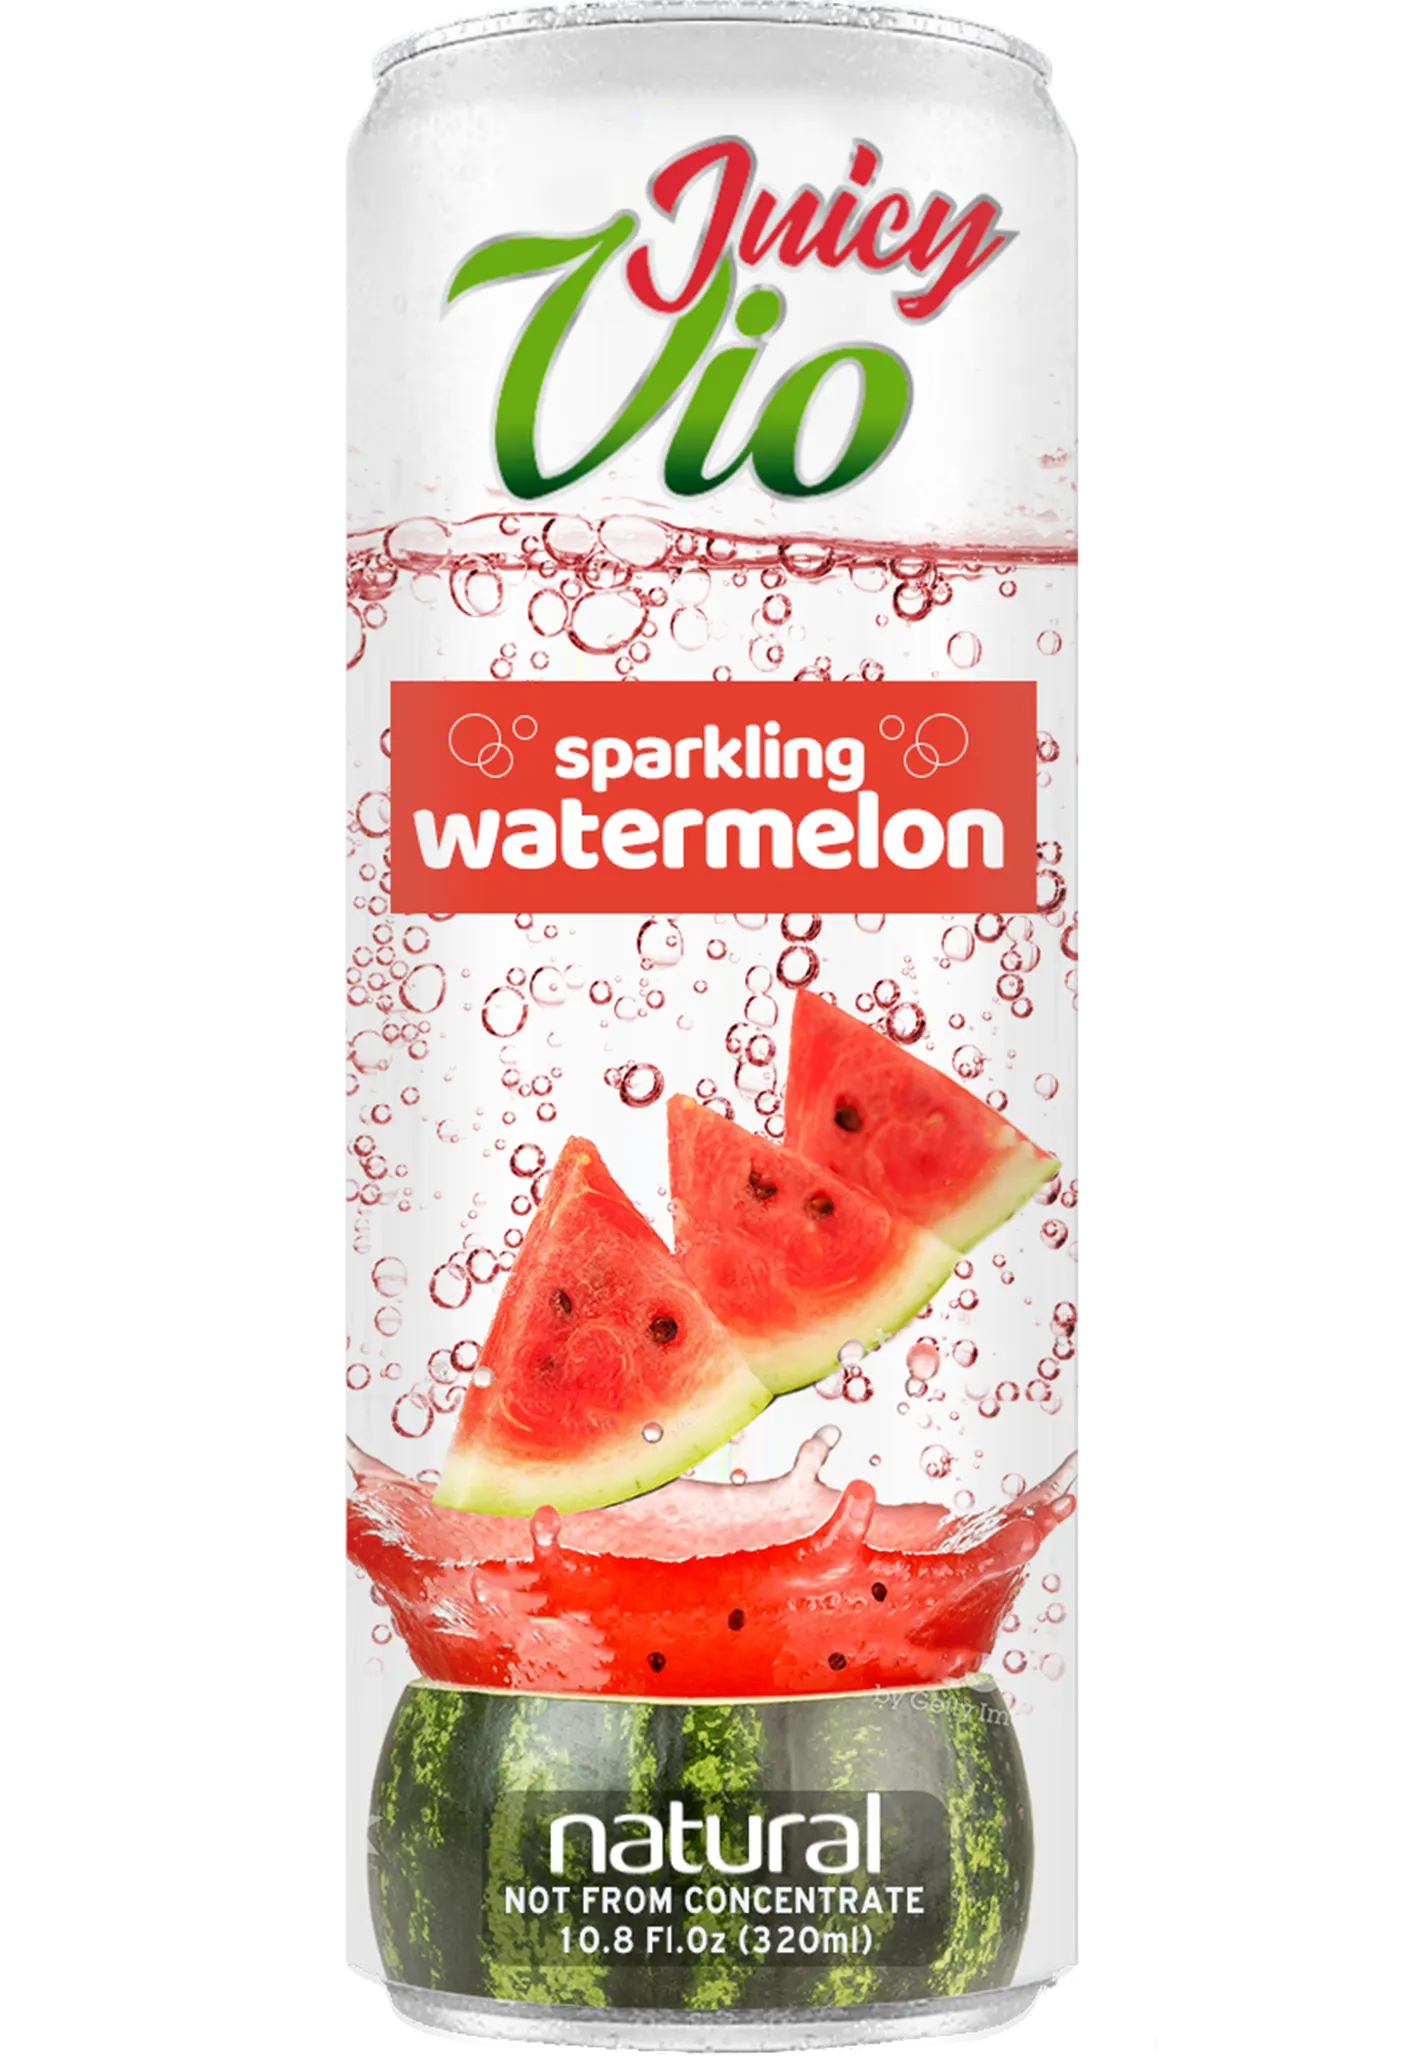 watermelon juice, watermelon water,